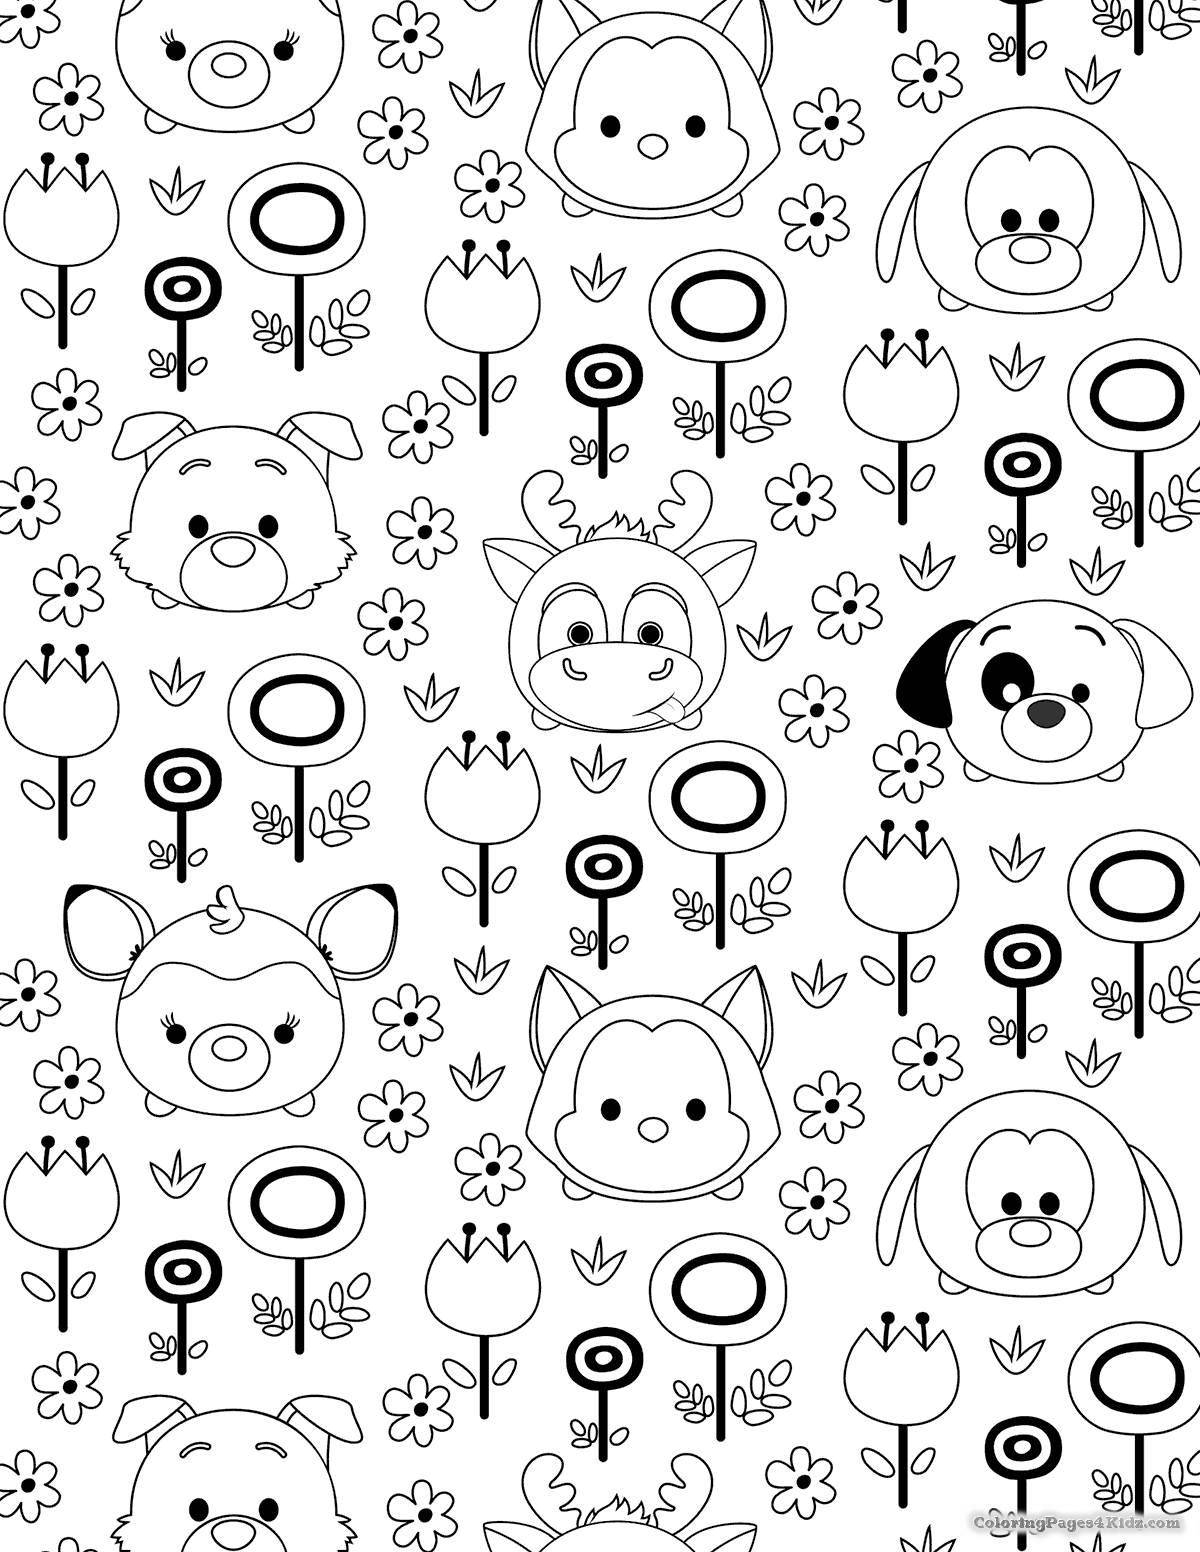 Adorable kawaii animal coloring page